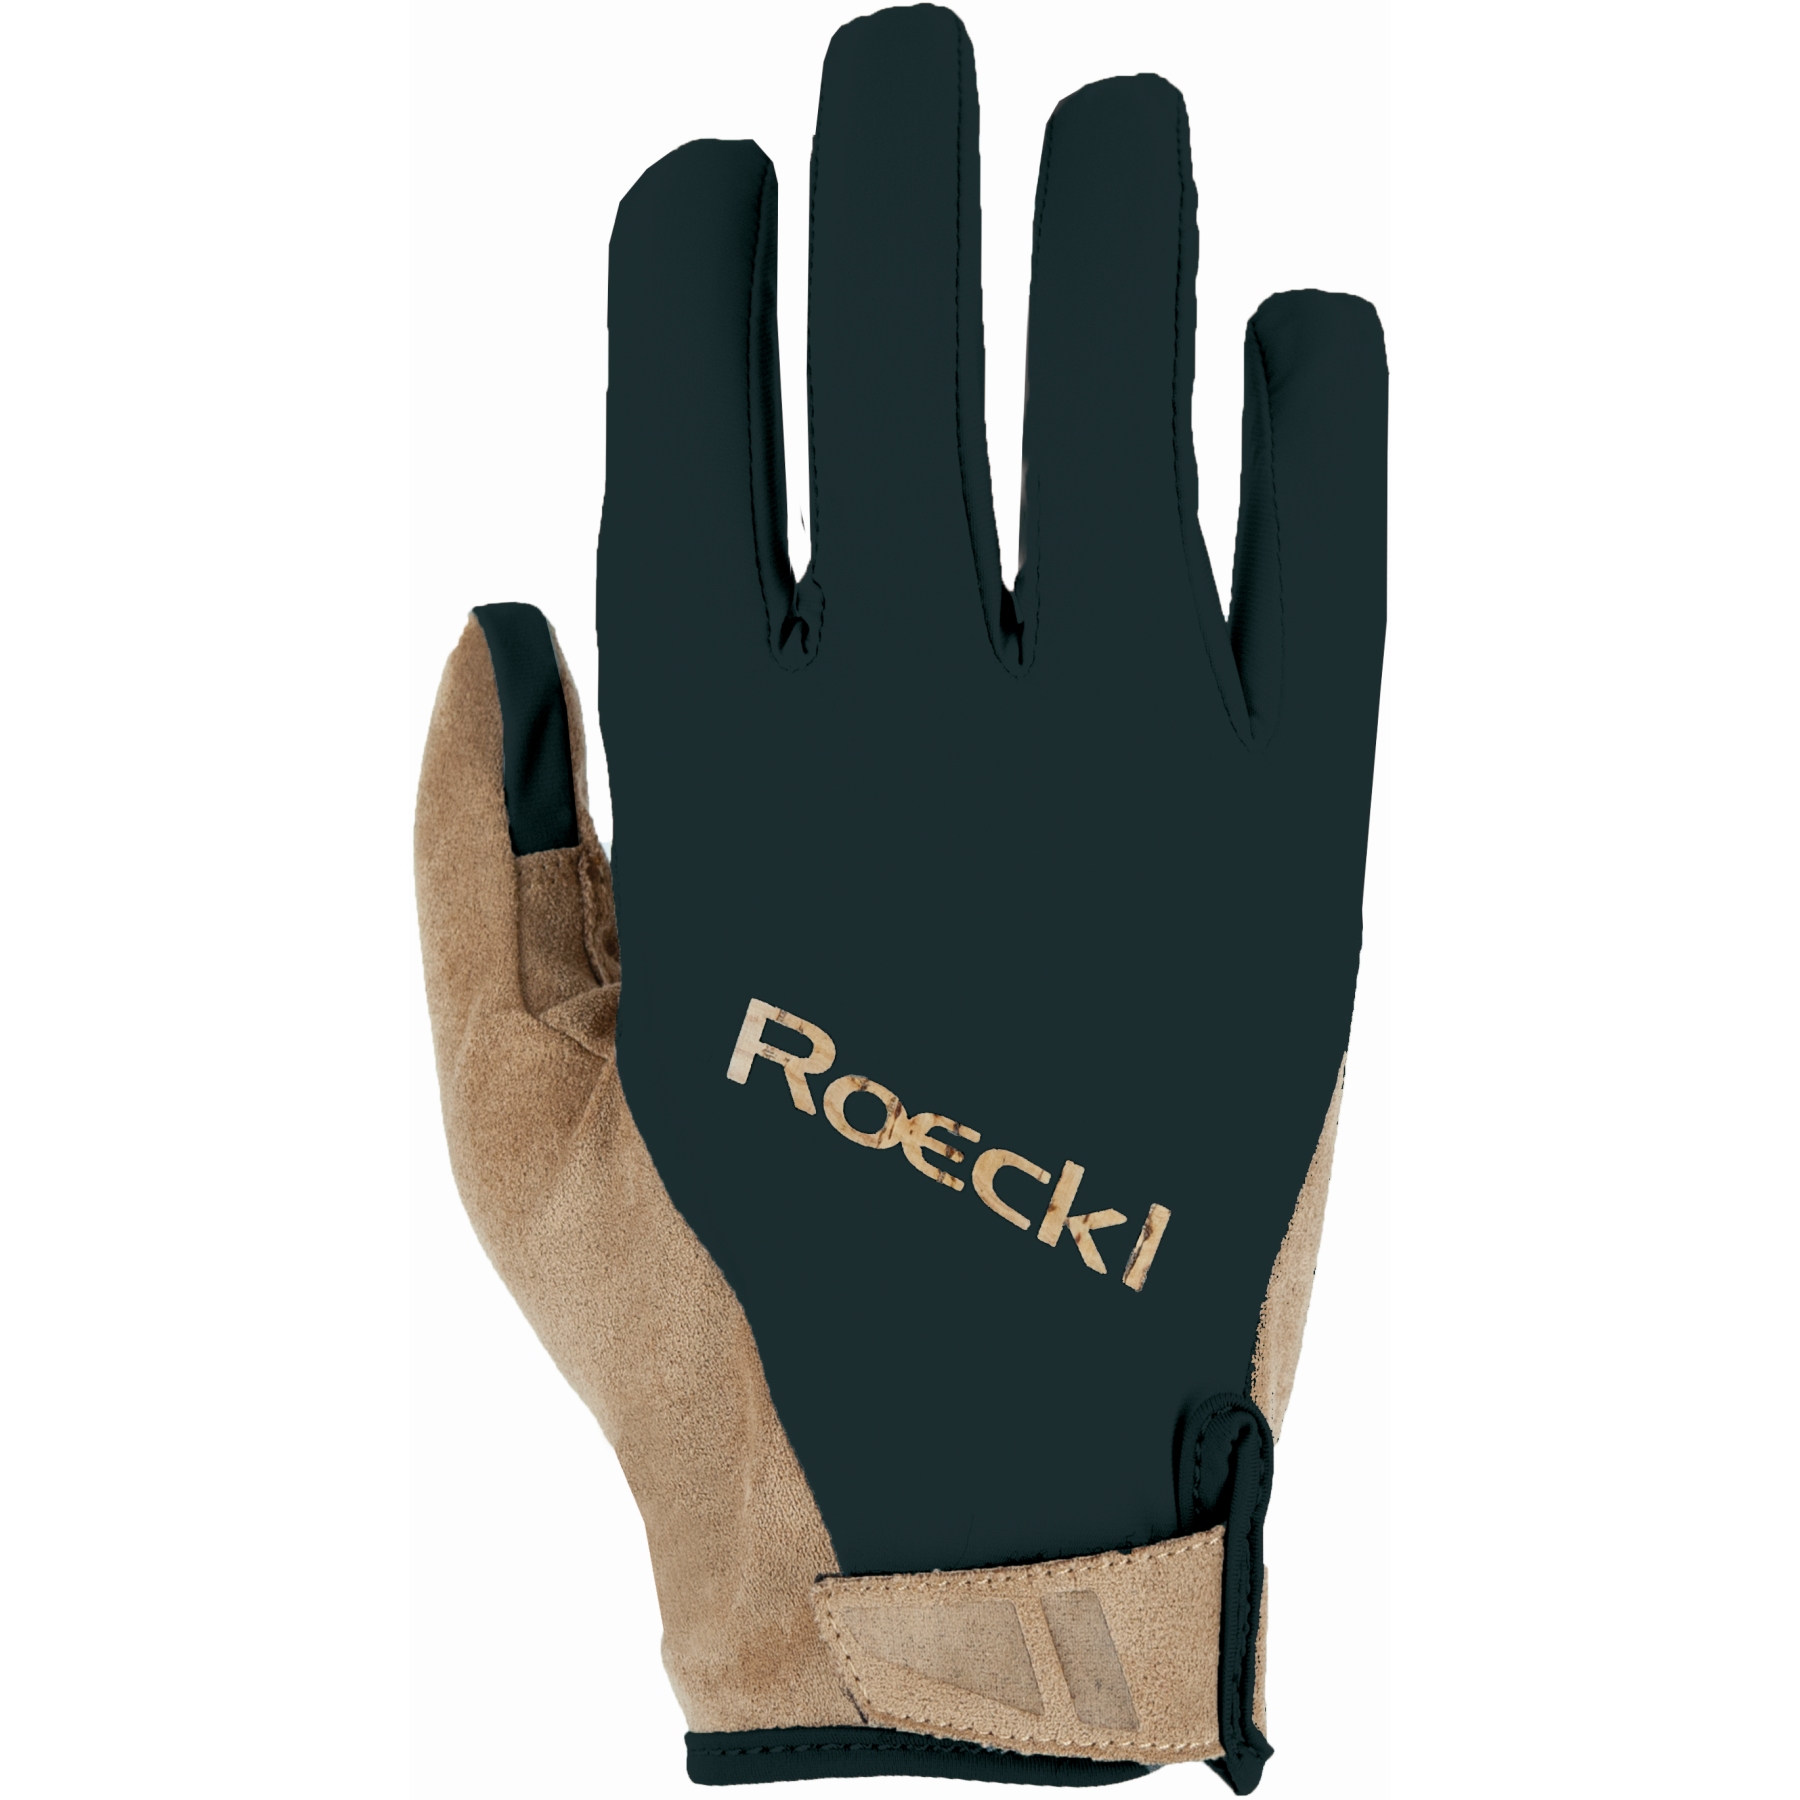 Produktbild von Roeckl Sports Mora Fahrradhandschuhe - schwarz 000